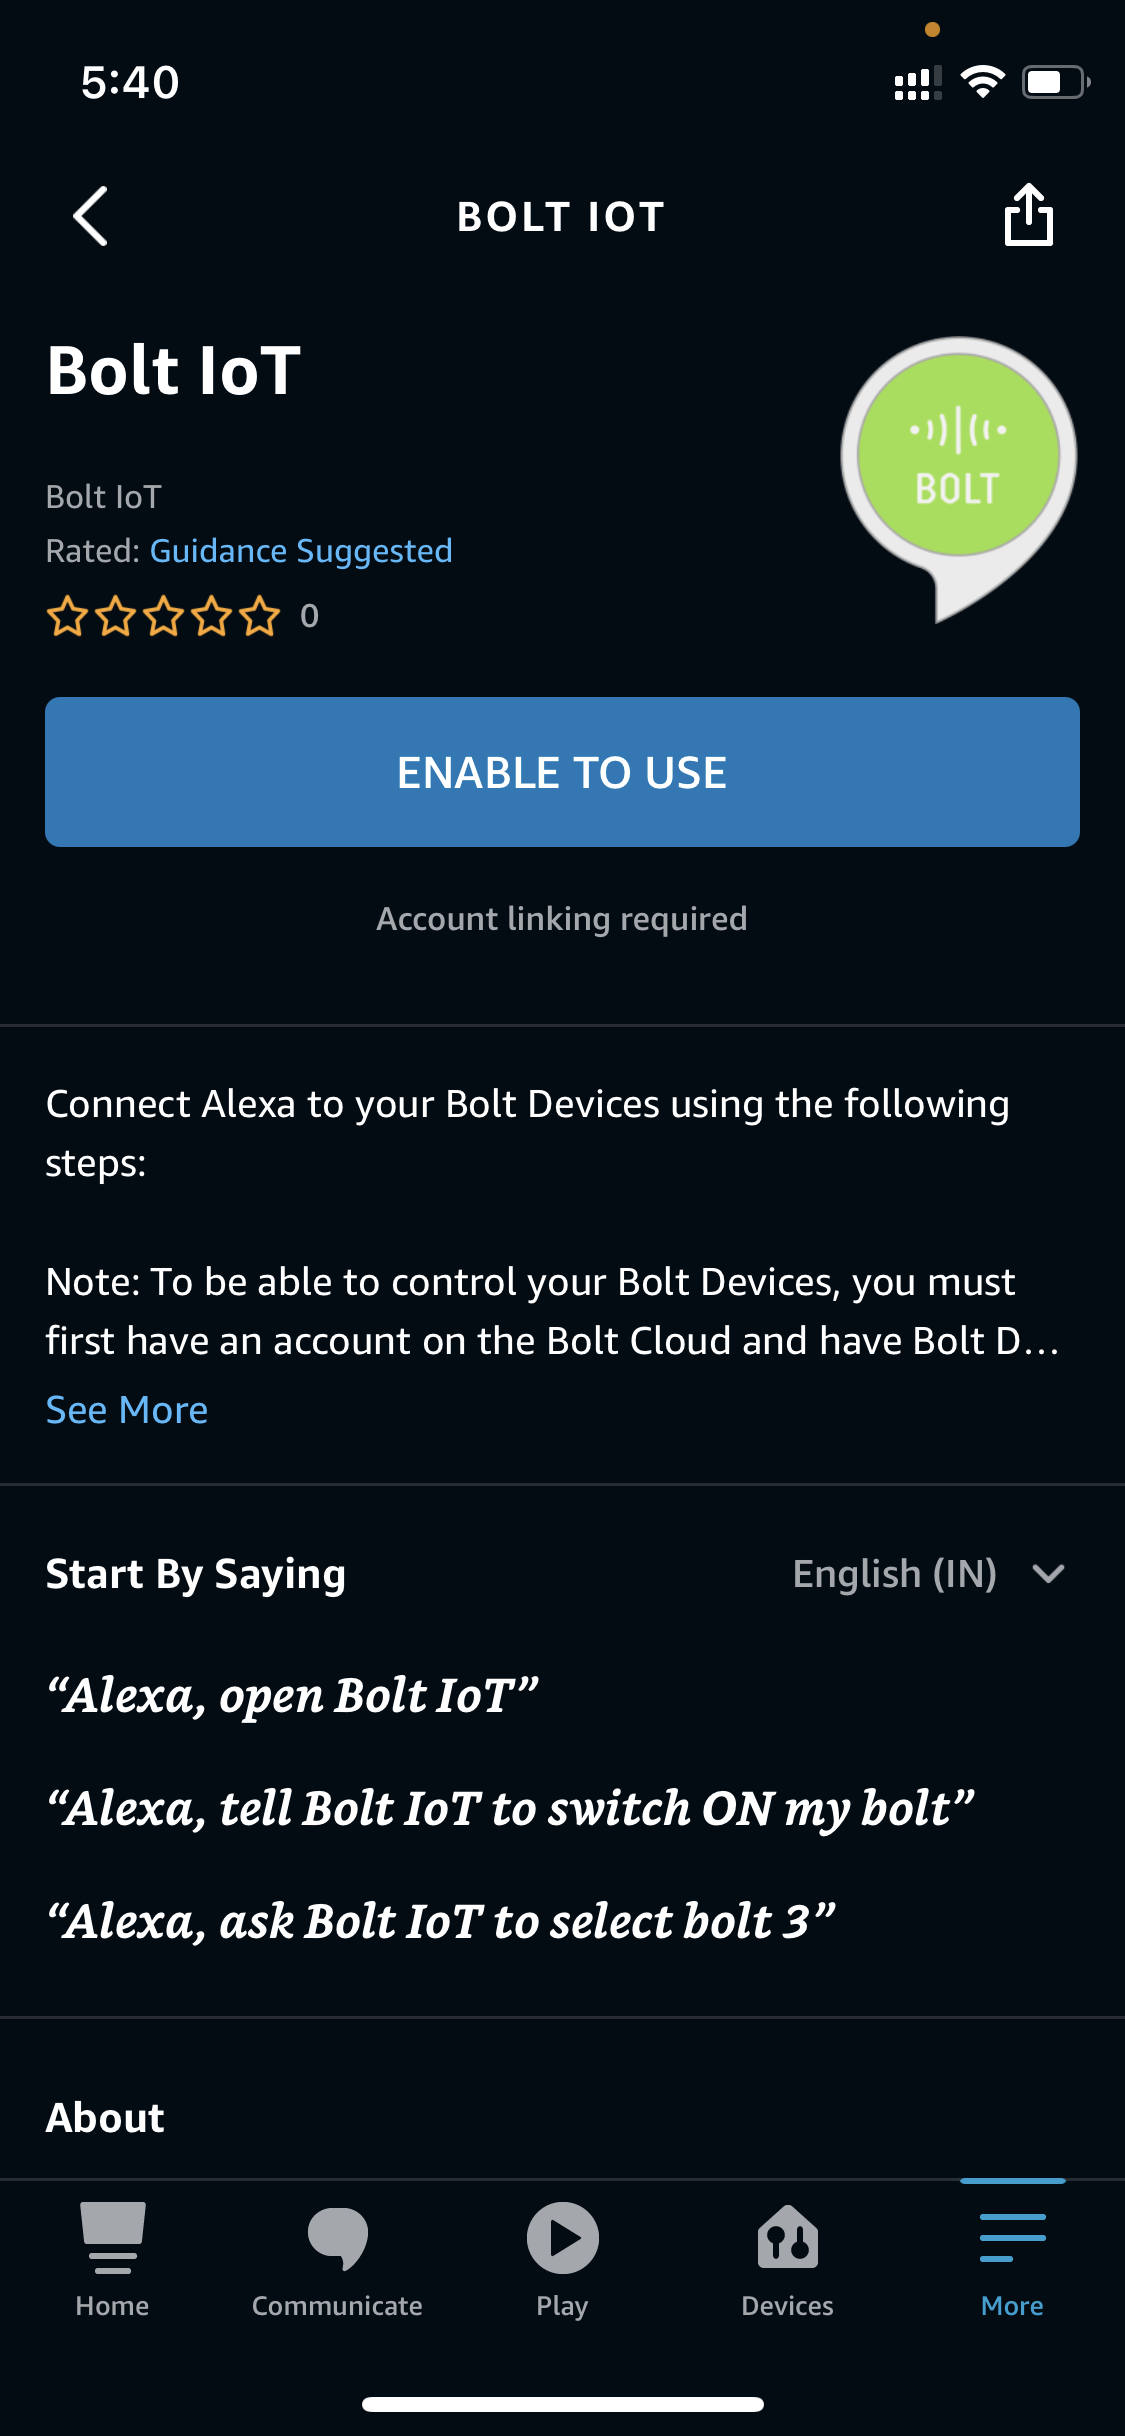 Bolt IoT Alexa skill